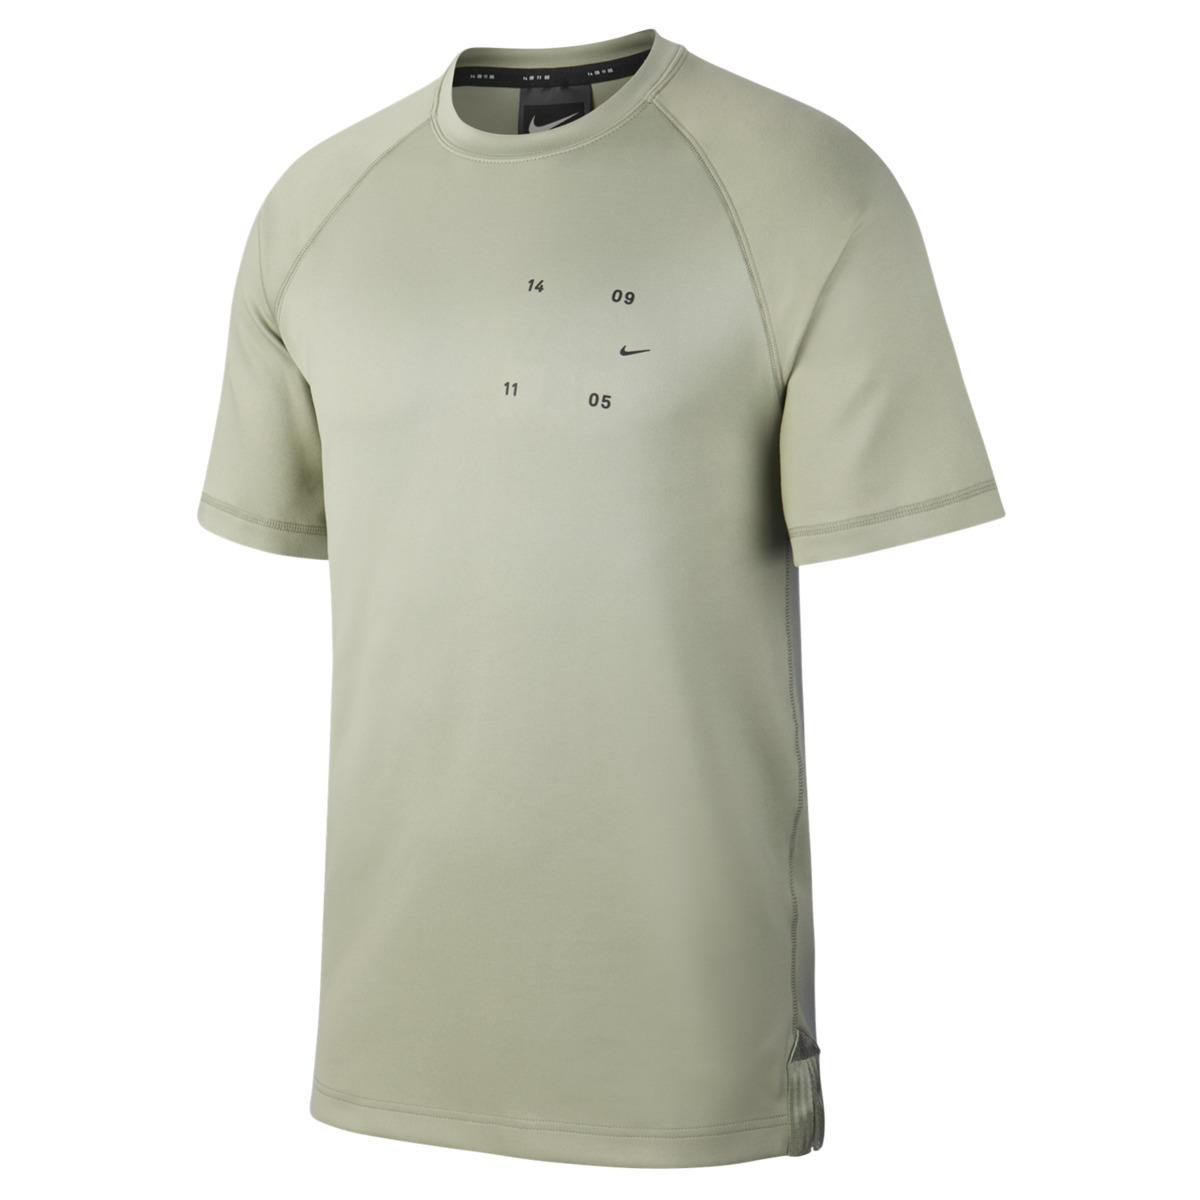 Nike Synthetic Sportswear Tech Pack T-shirt in Green for Men - Lyst